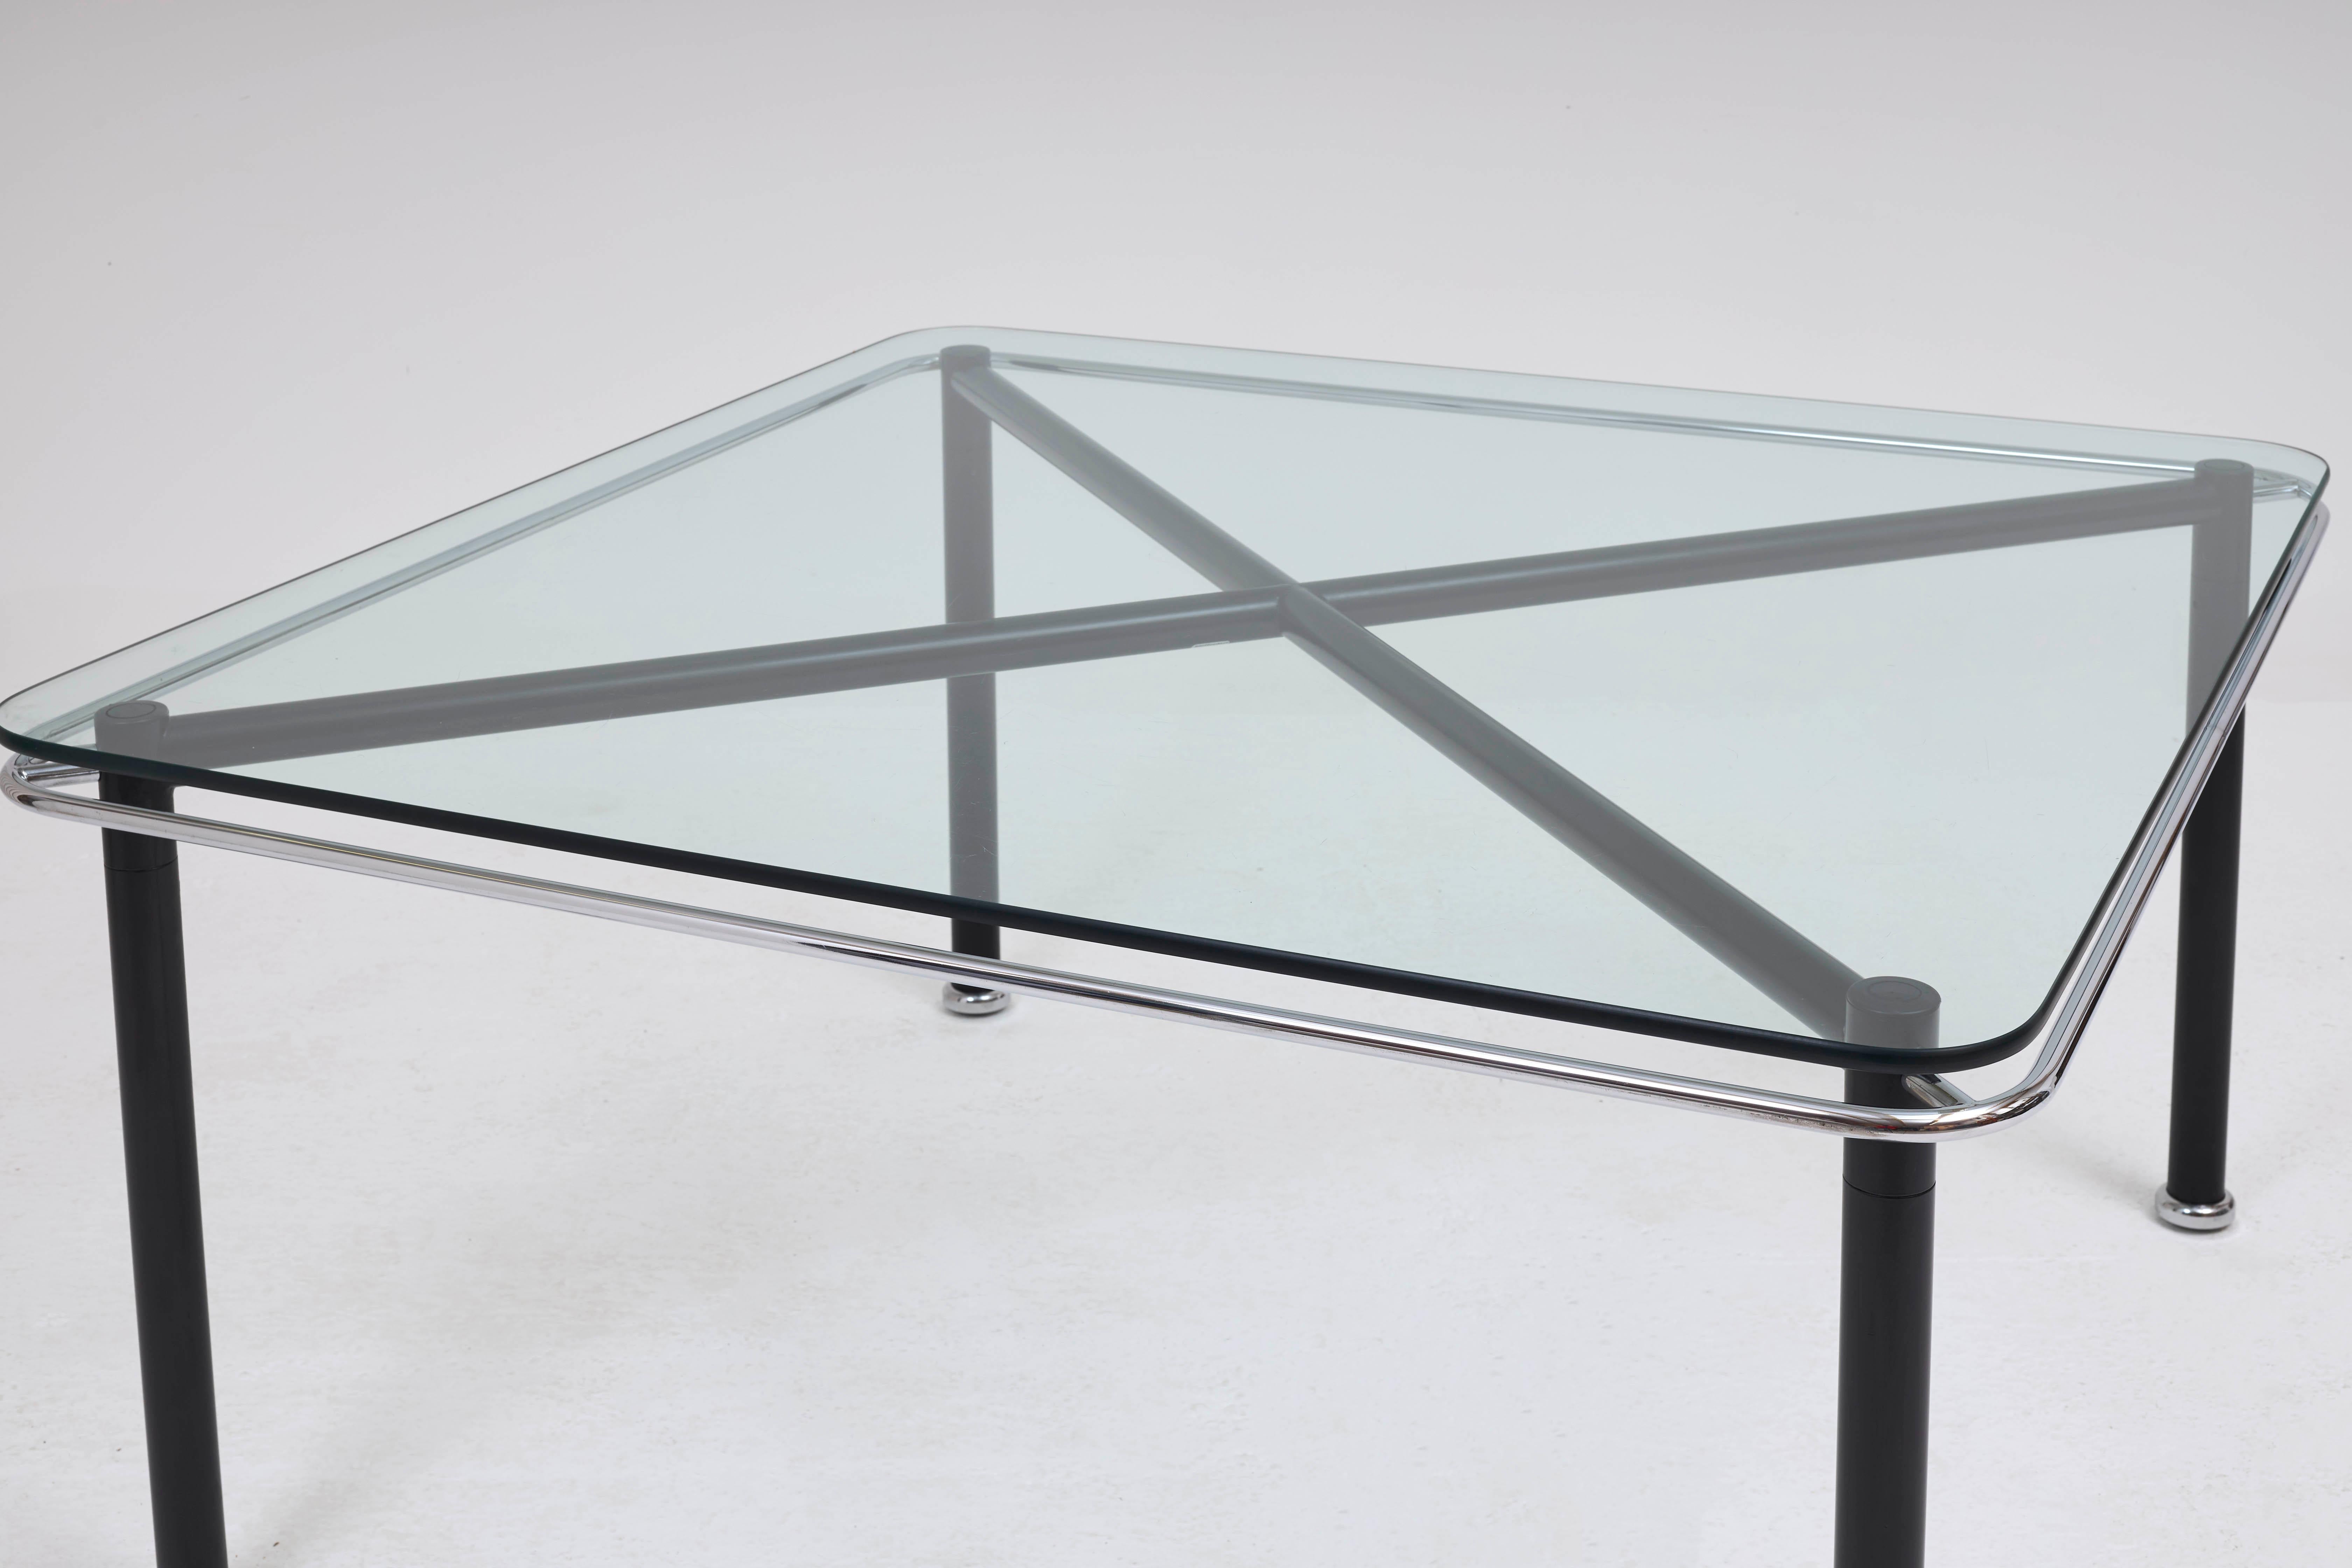 Conçue par Sottsass Associati et produite par Bieffeplast vers les années 1980. La table 'Crossing' est dotée d'une structure robuste en acier tubulaire revêtu de poudre noire, de garnitures chromées et d'un plateau en verre trempé. Cet exemple rare